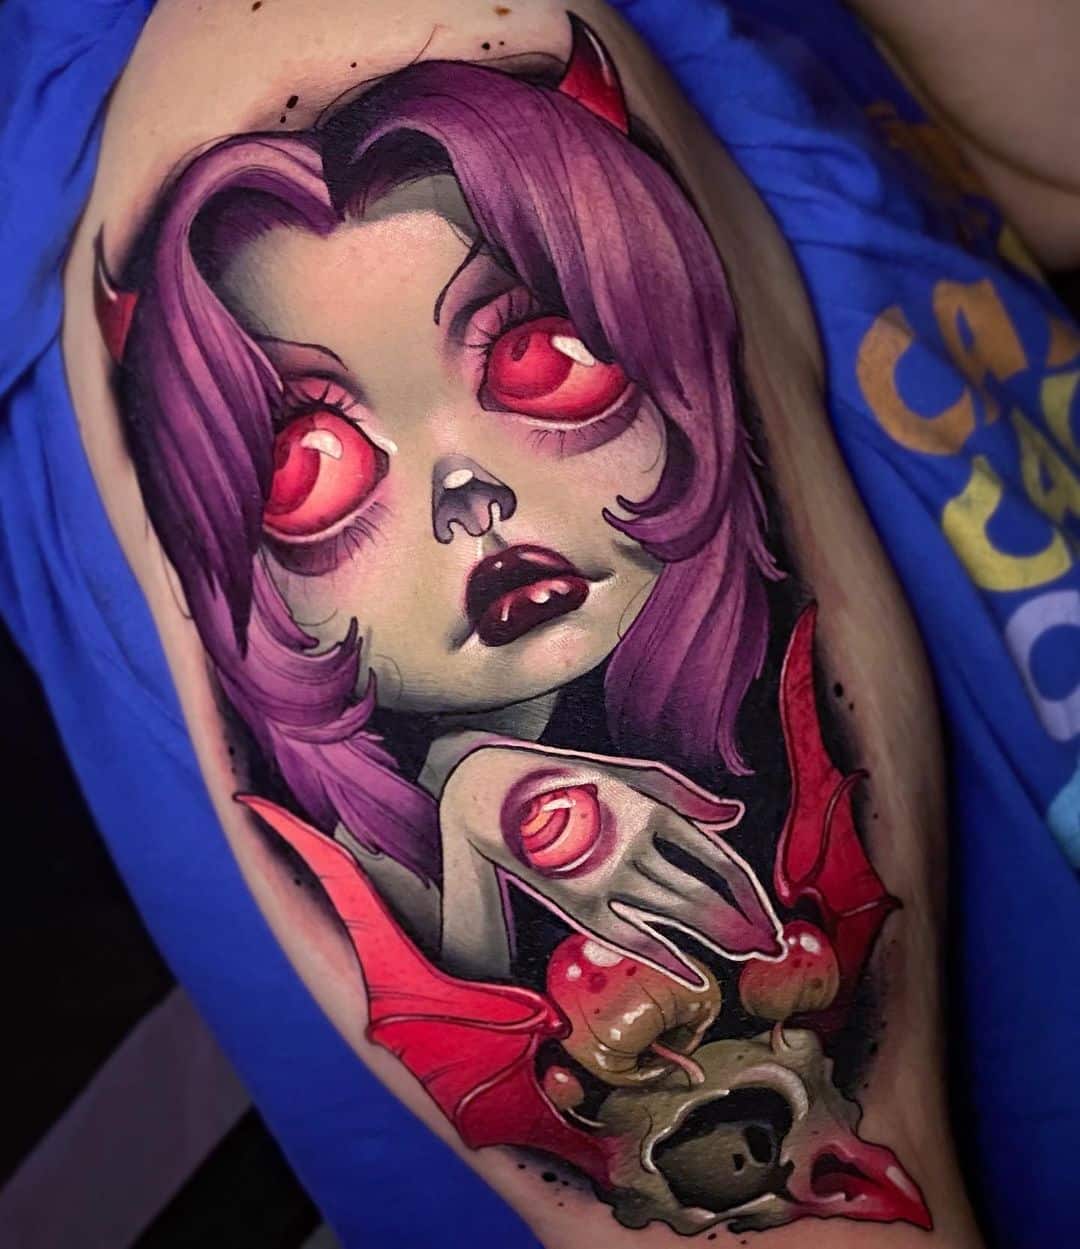 kelly-doty-tattoo-artist-tattoo-purple-illustration